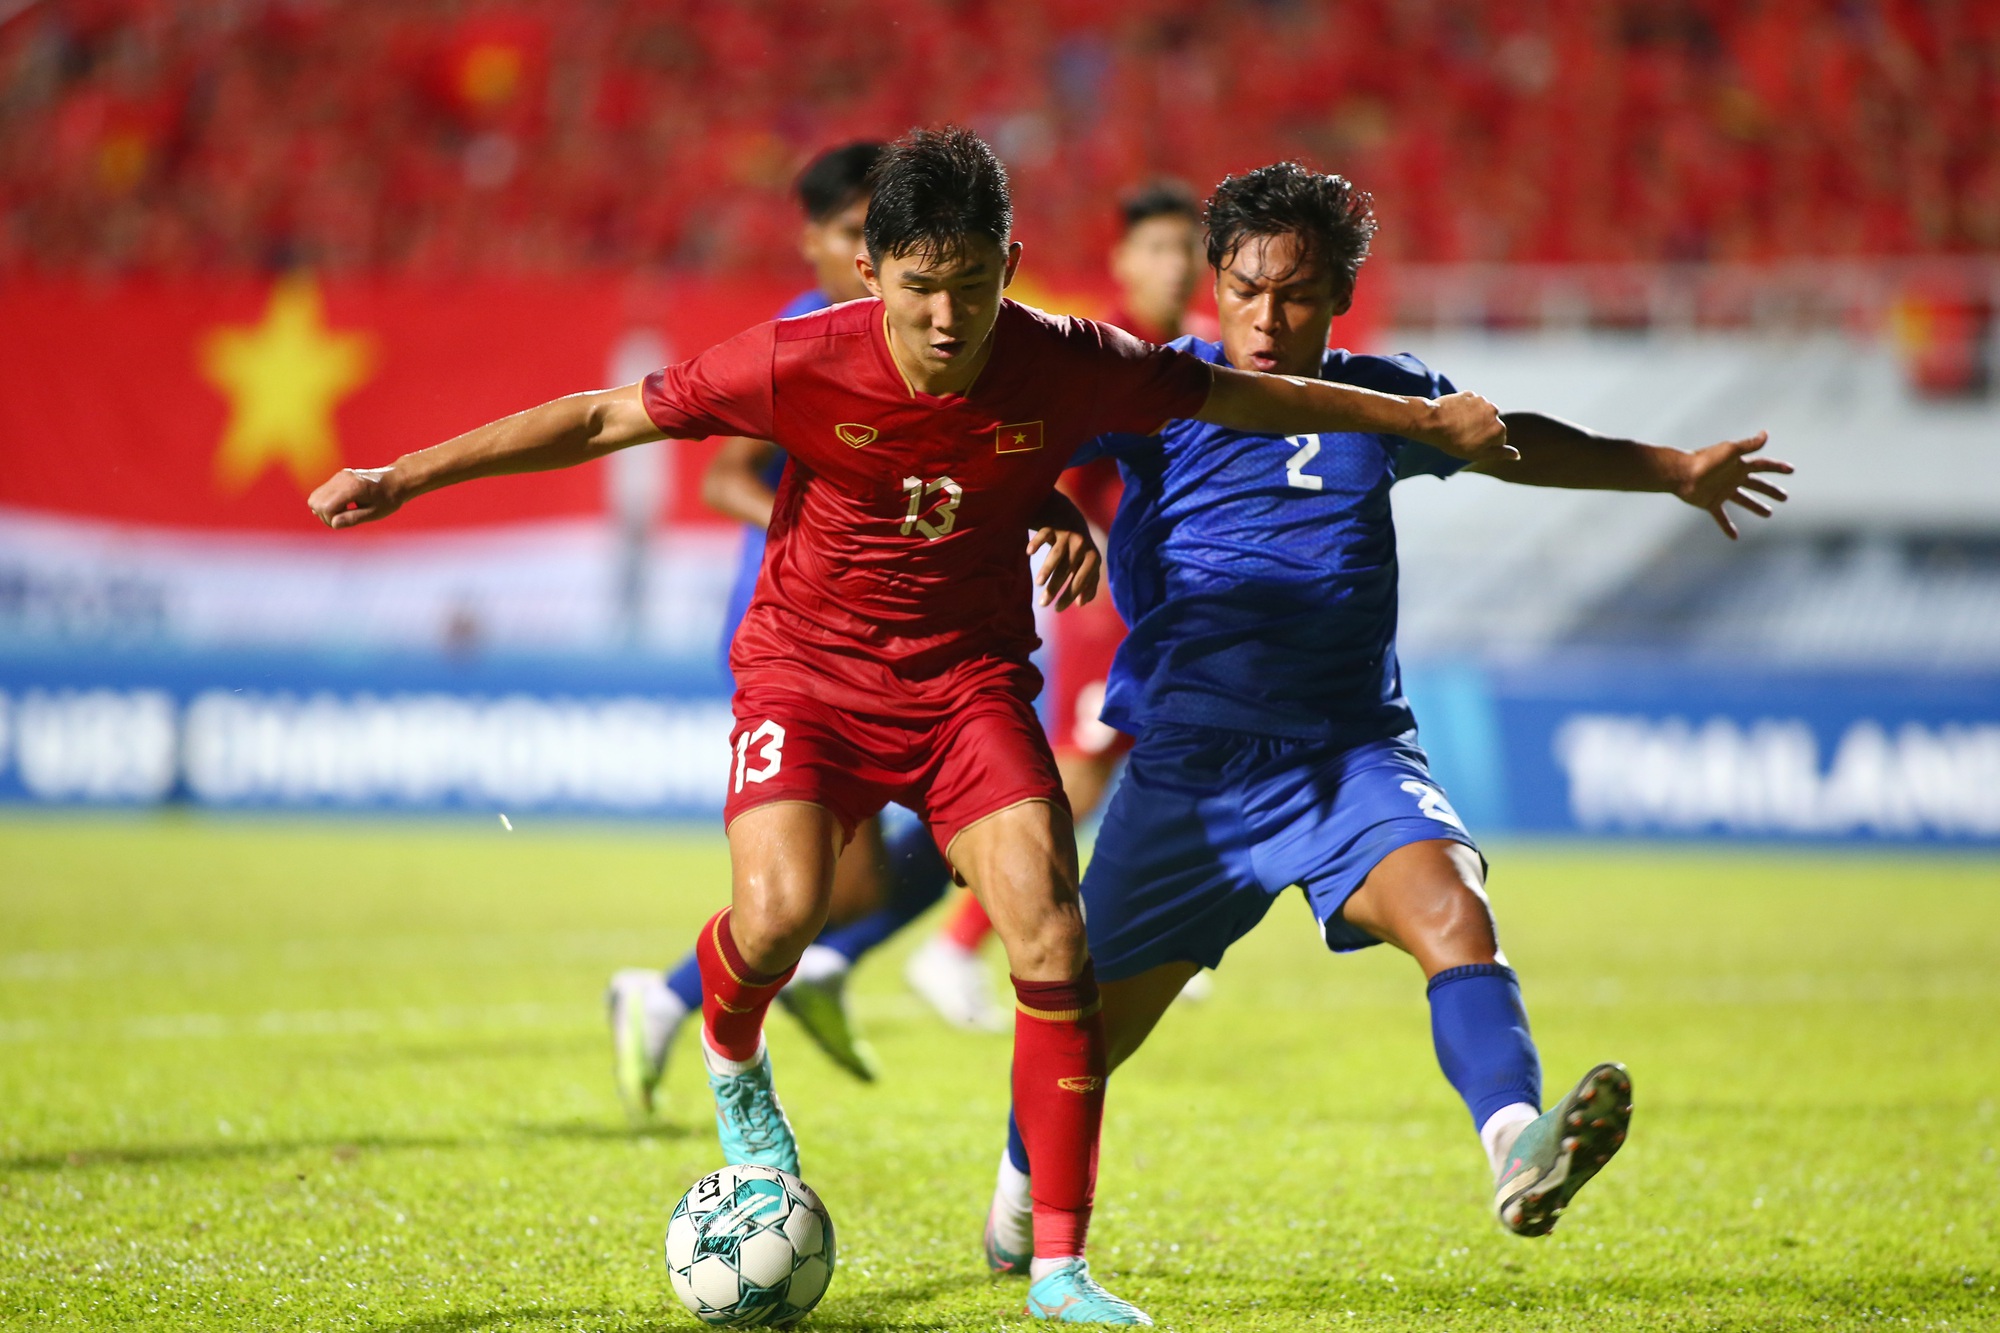 Nguyễn Đăng Dương (13) ra mắt đội tuyển U.23 Việt Nam ở tuổi 17